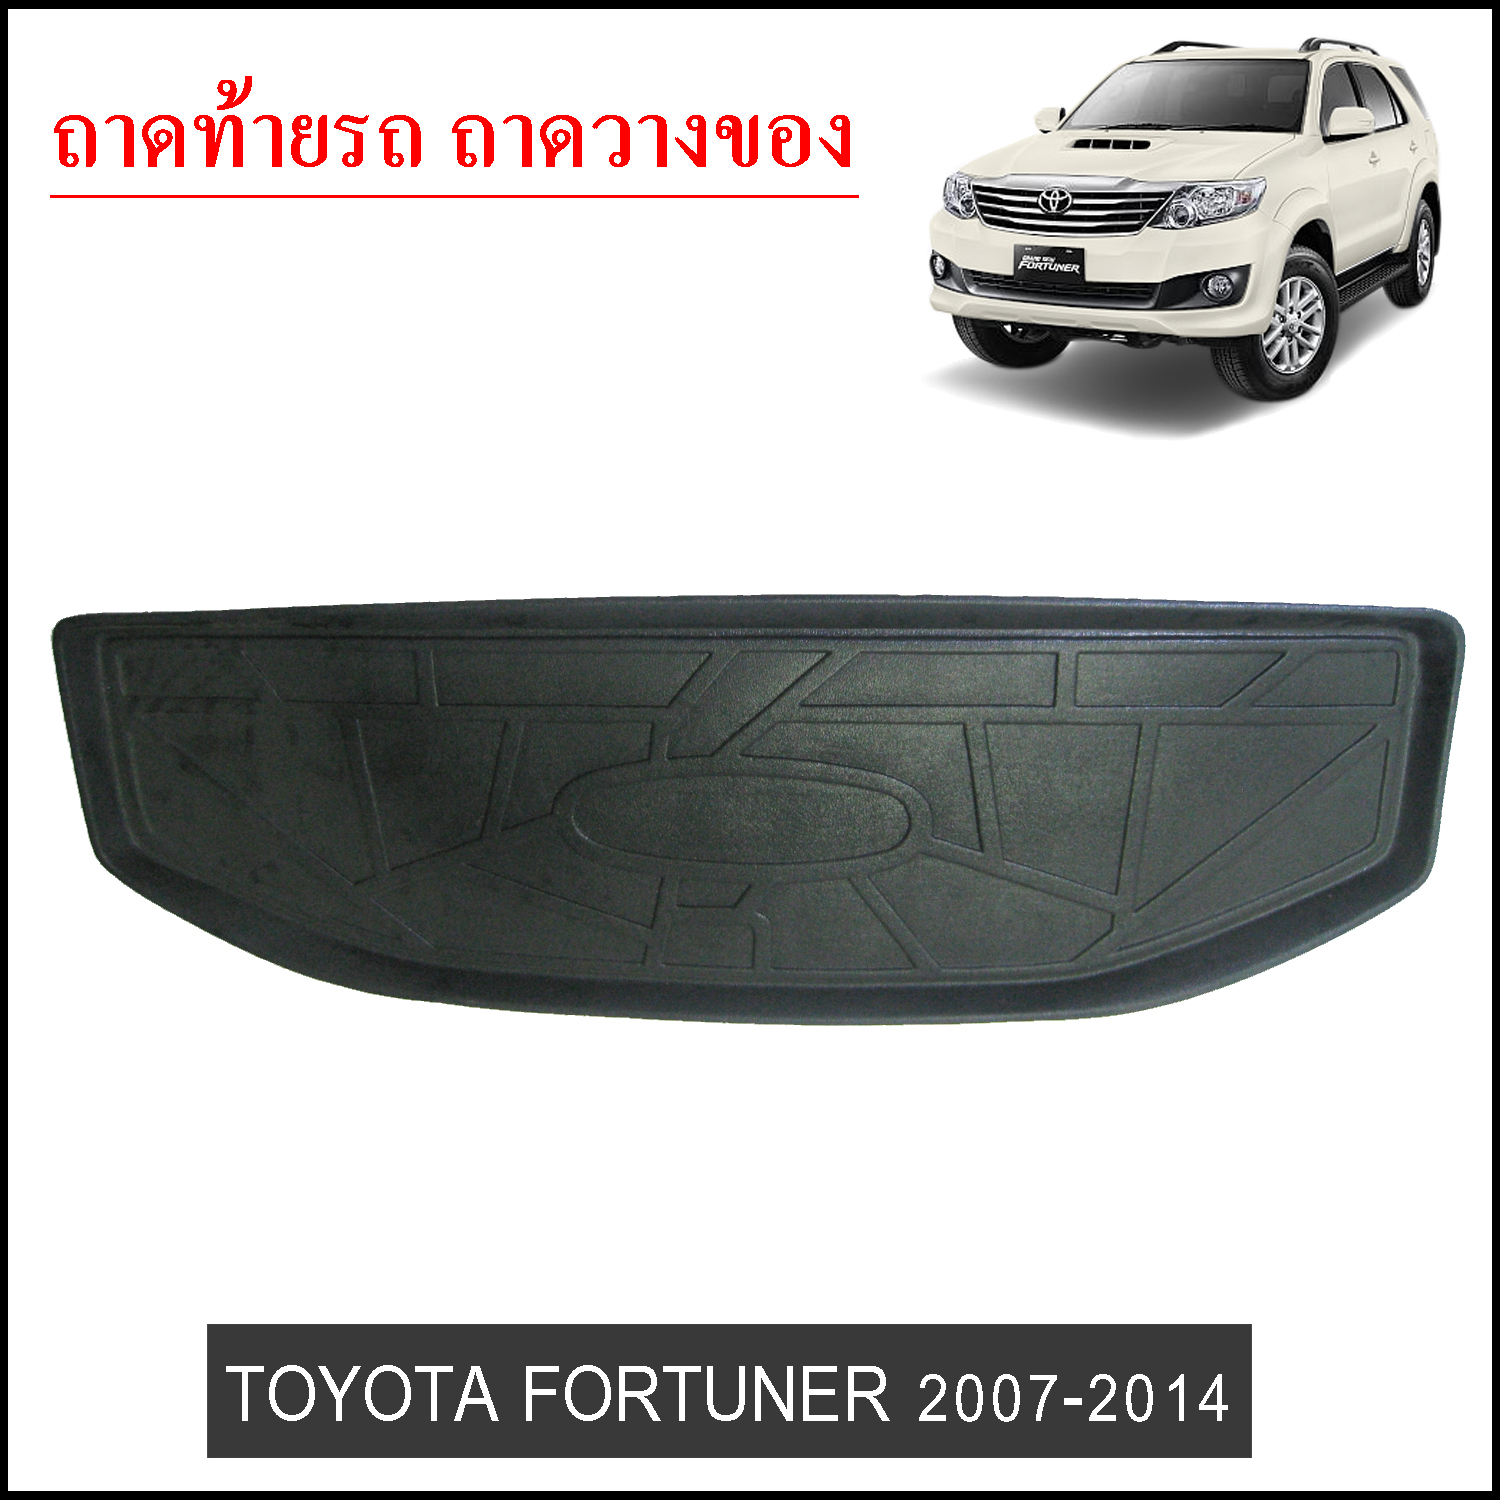 ถาดท้ายวางของ Toyota Fortuner 